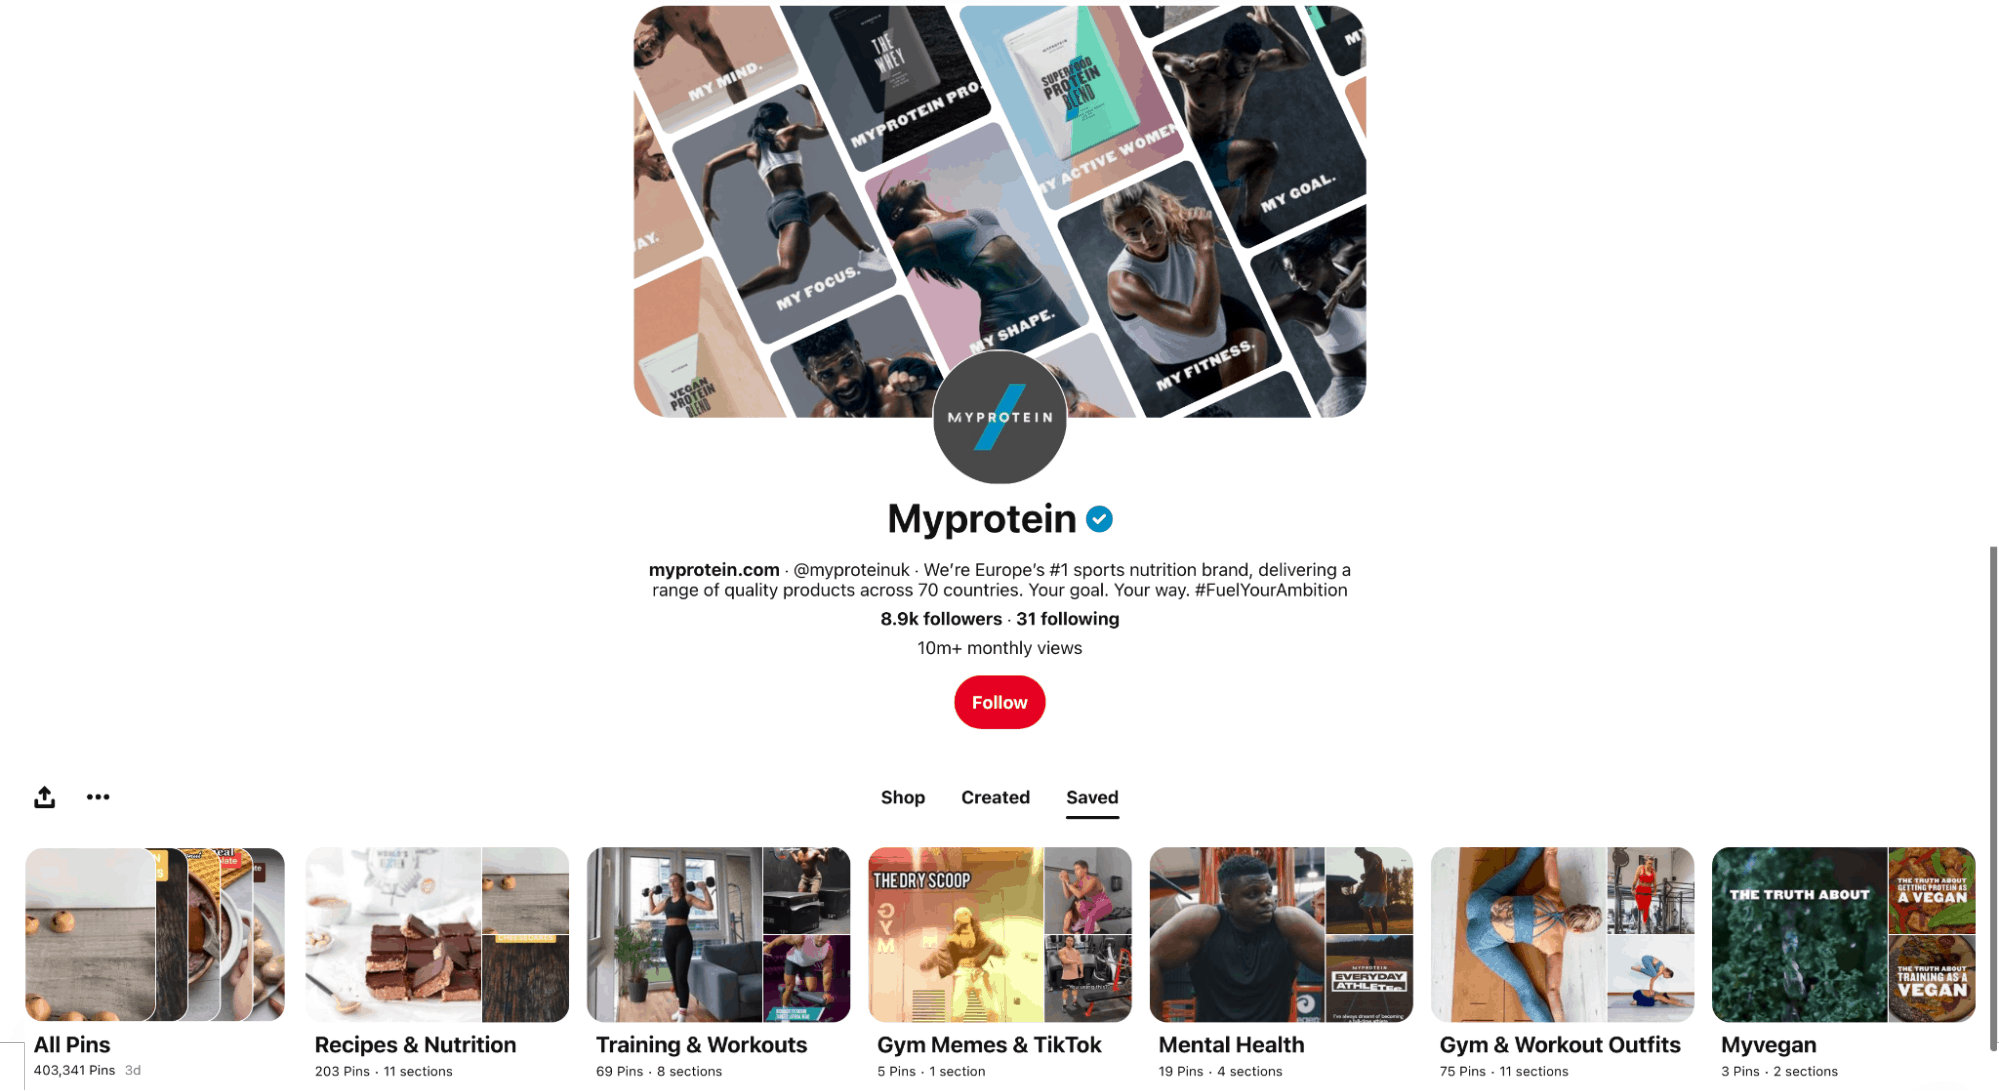 Myprotein’s Pinterest page